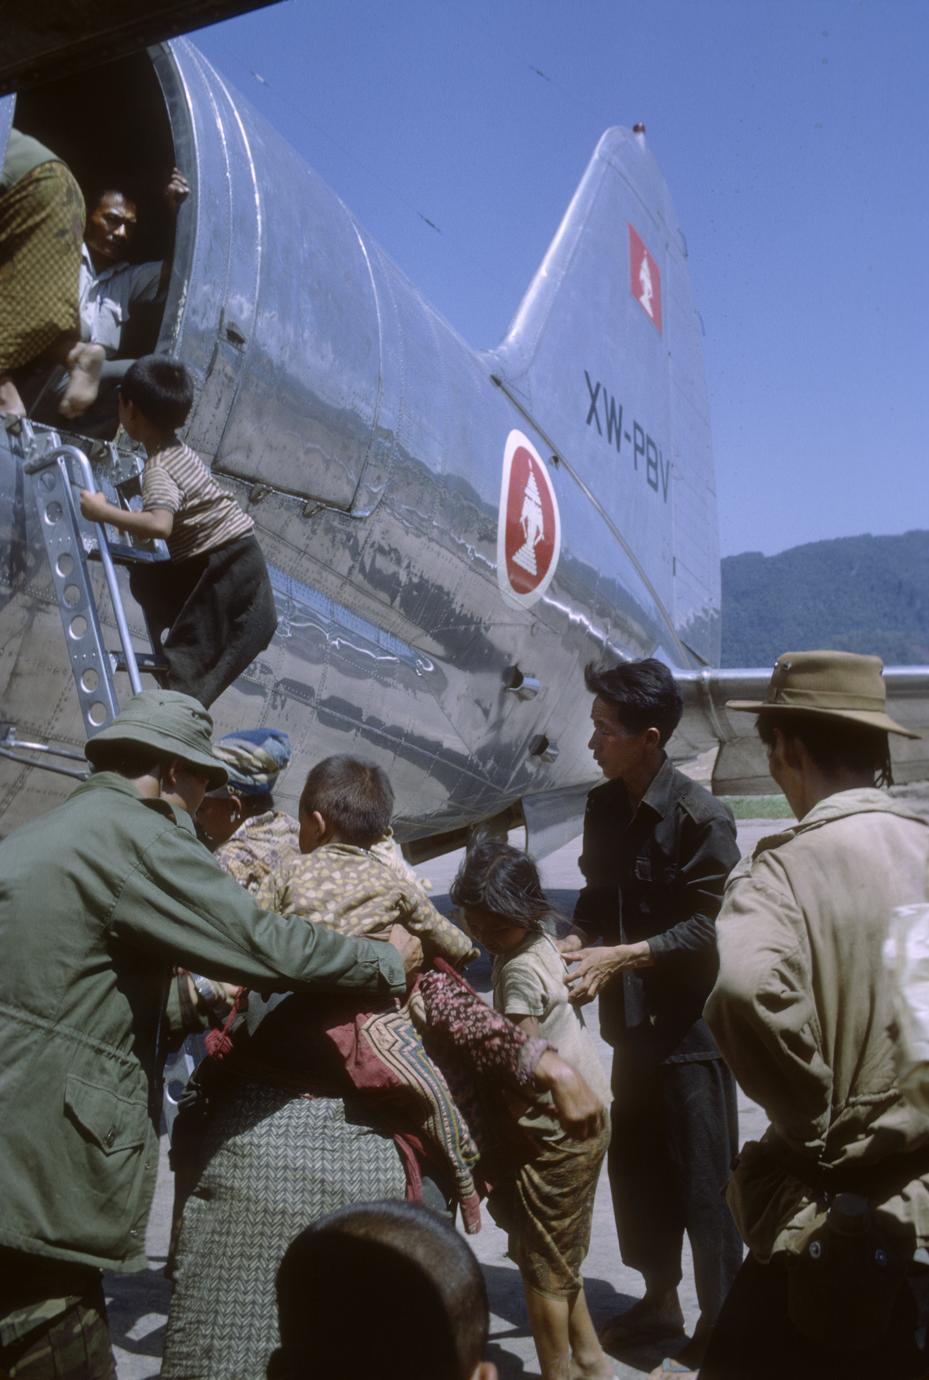 Hmong refugee evacuation